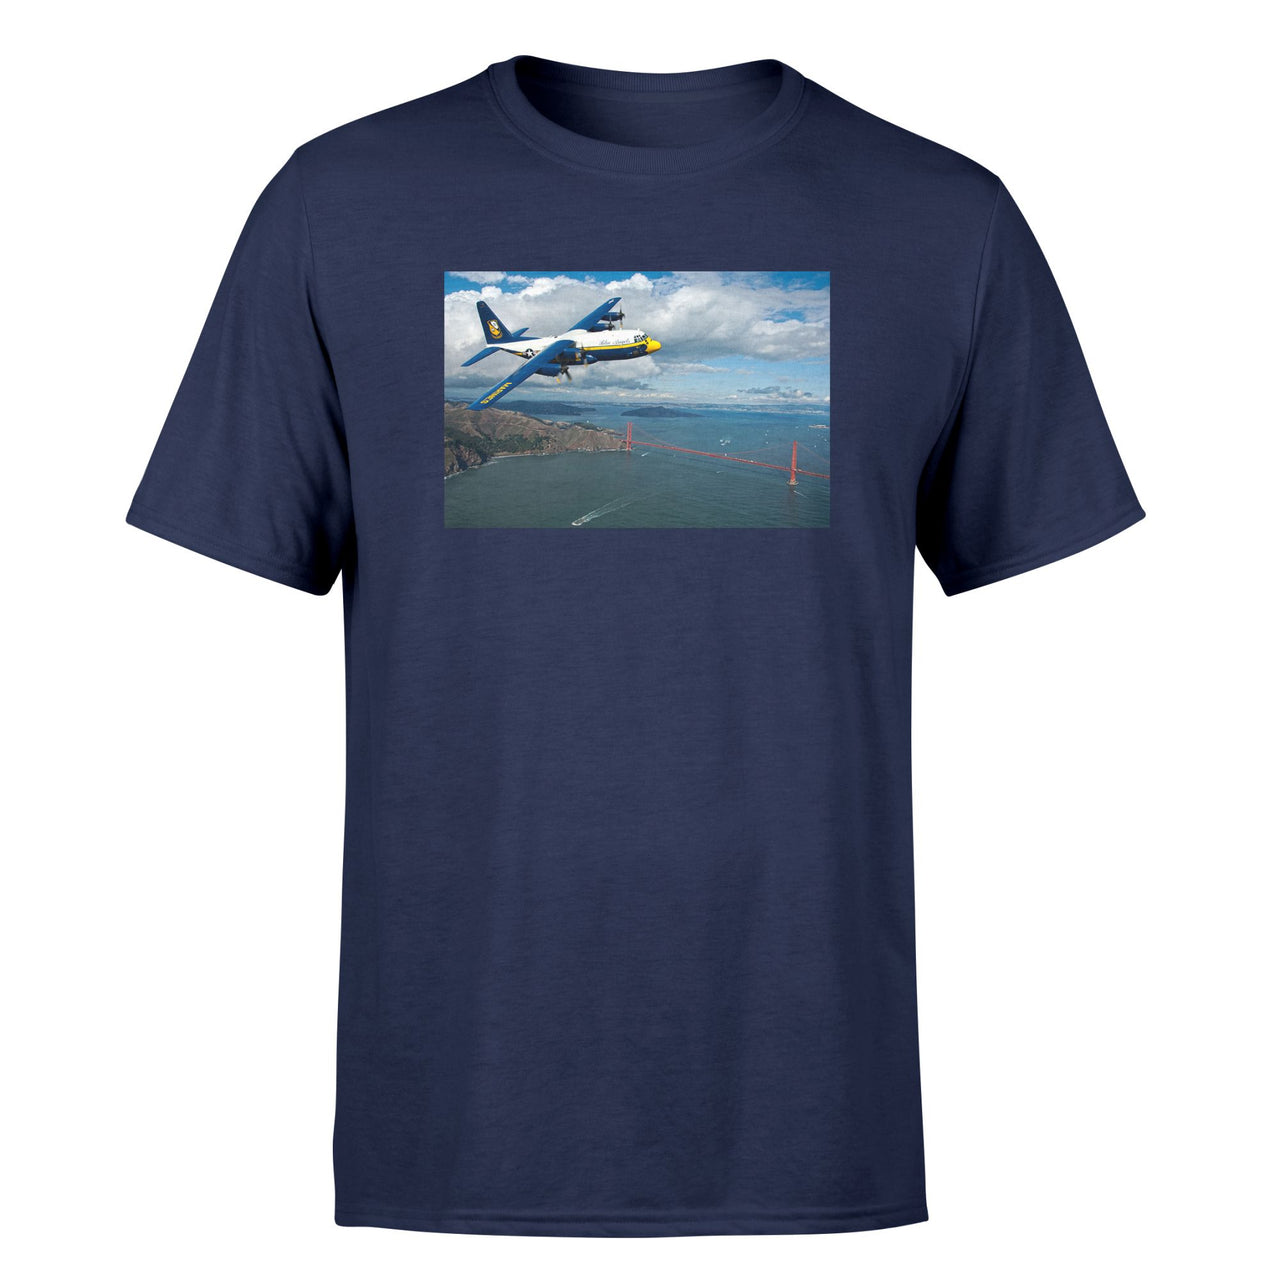 Blue Angels & Bridge Designed T-Shirts